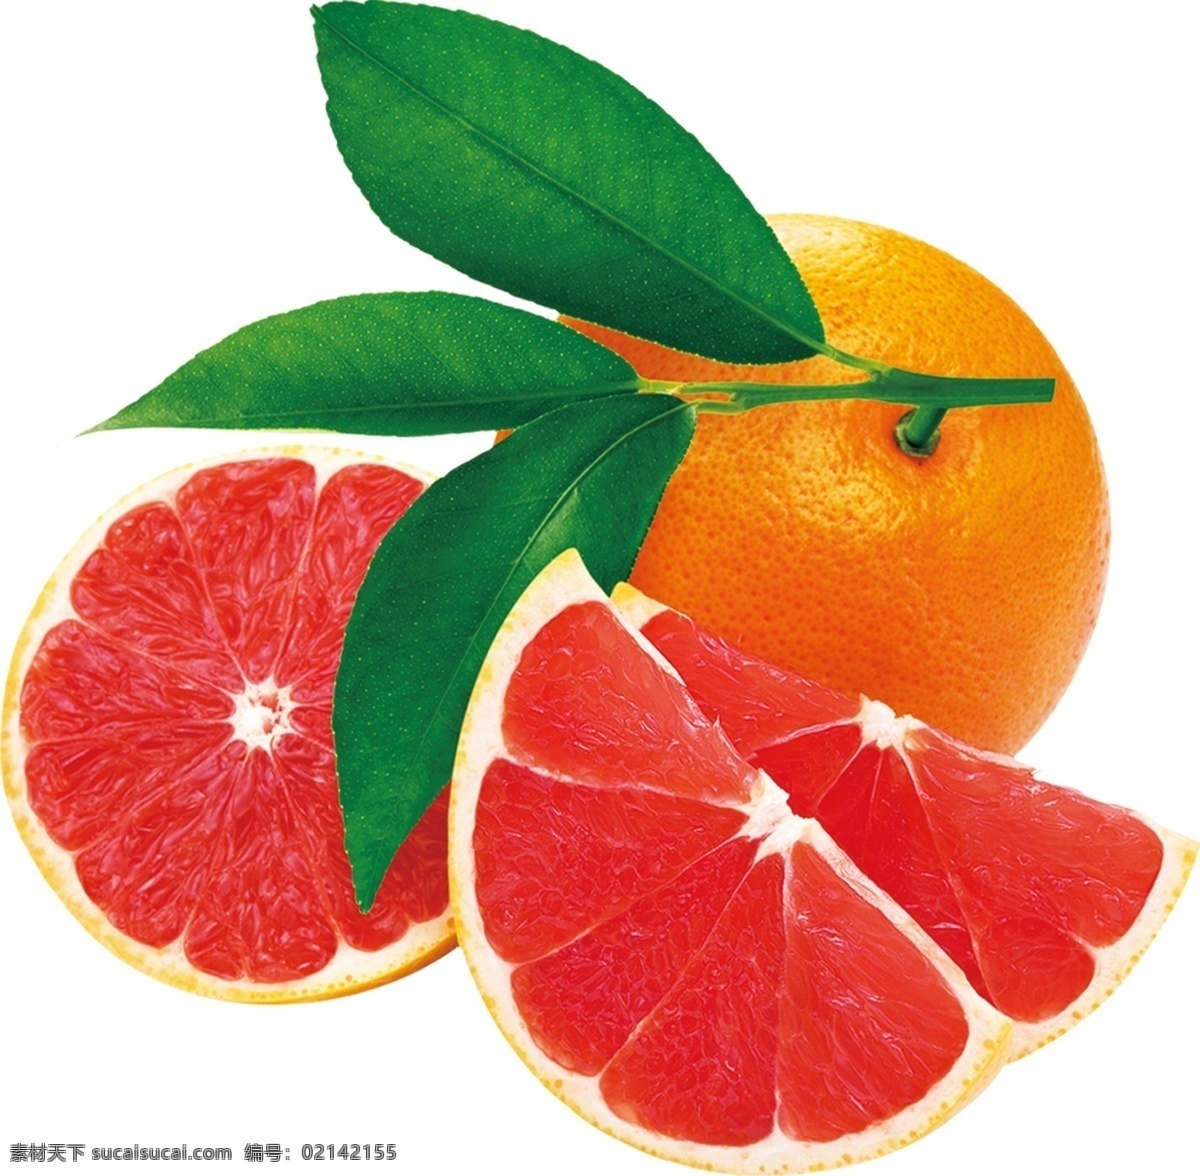 橙子图片 血橙 高清 脐橙 红色 包装设计